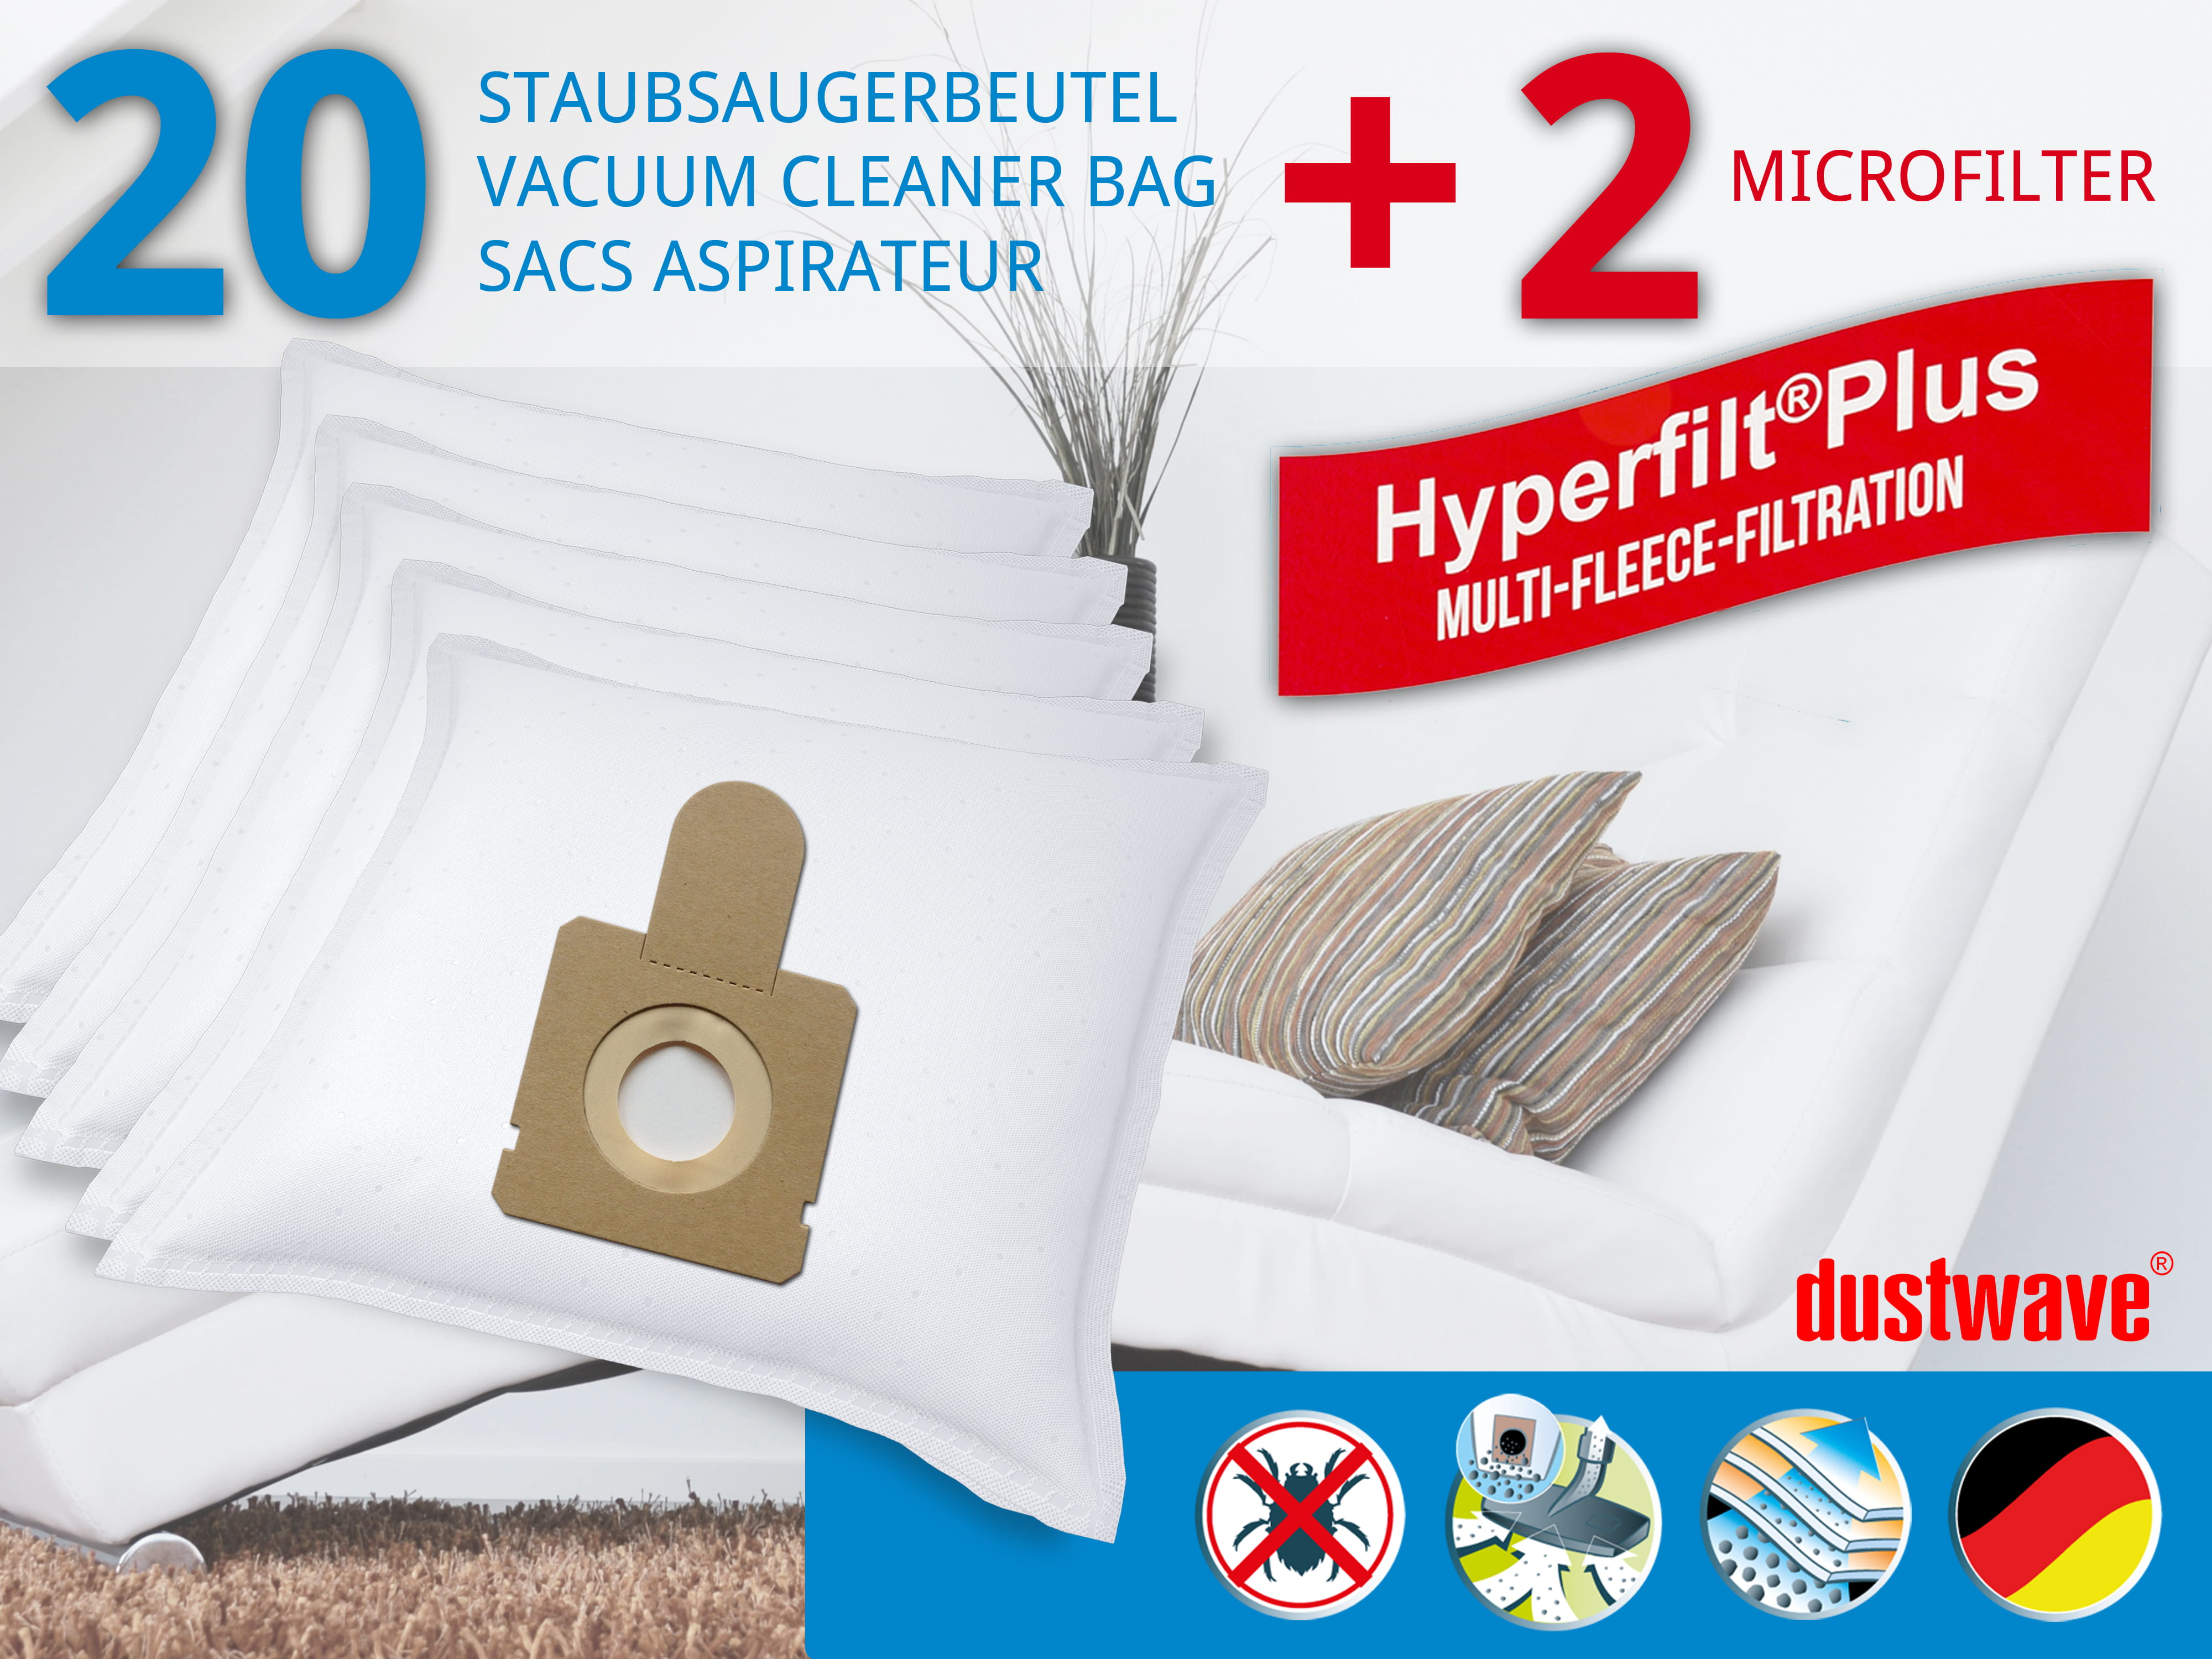 Dustwave® 20 Staubsaugerbeutel für Hoover BV11 011 - hocheffizient, mehrlagiges Mikrovlies mit Hygieneverschluss - Made in Germany